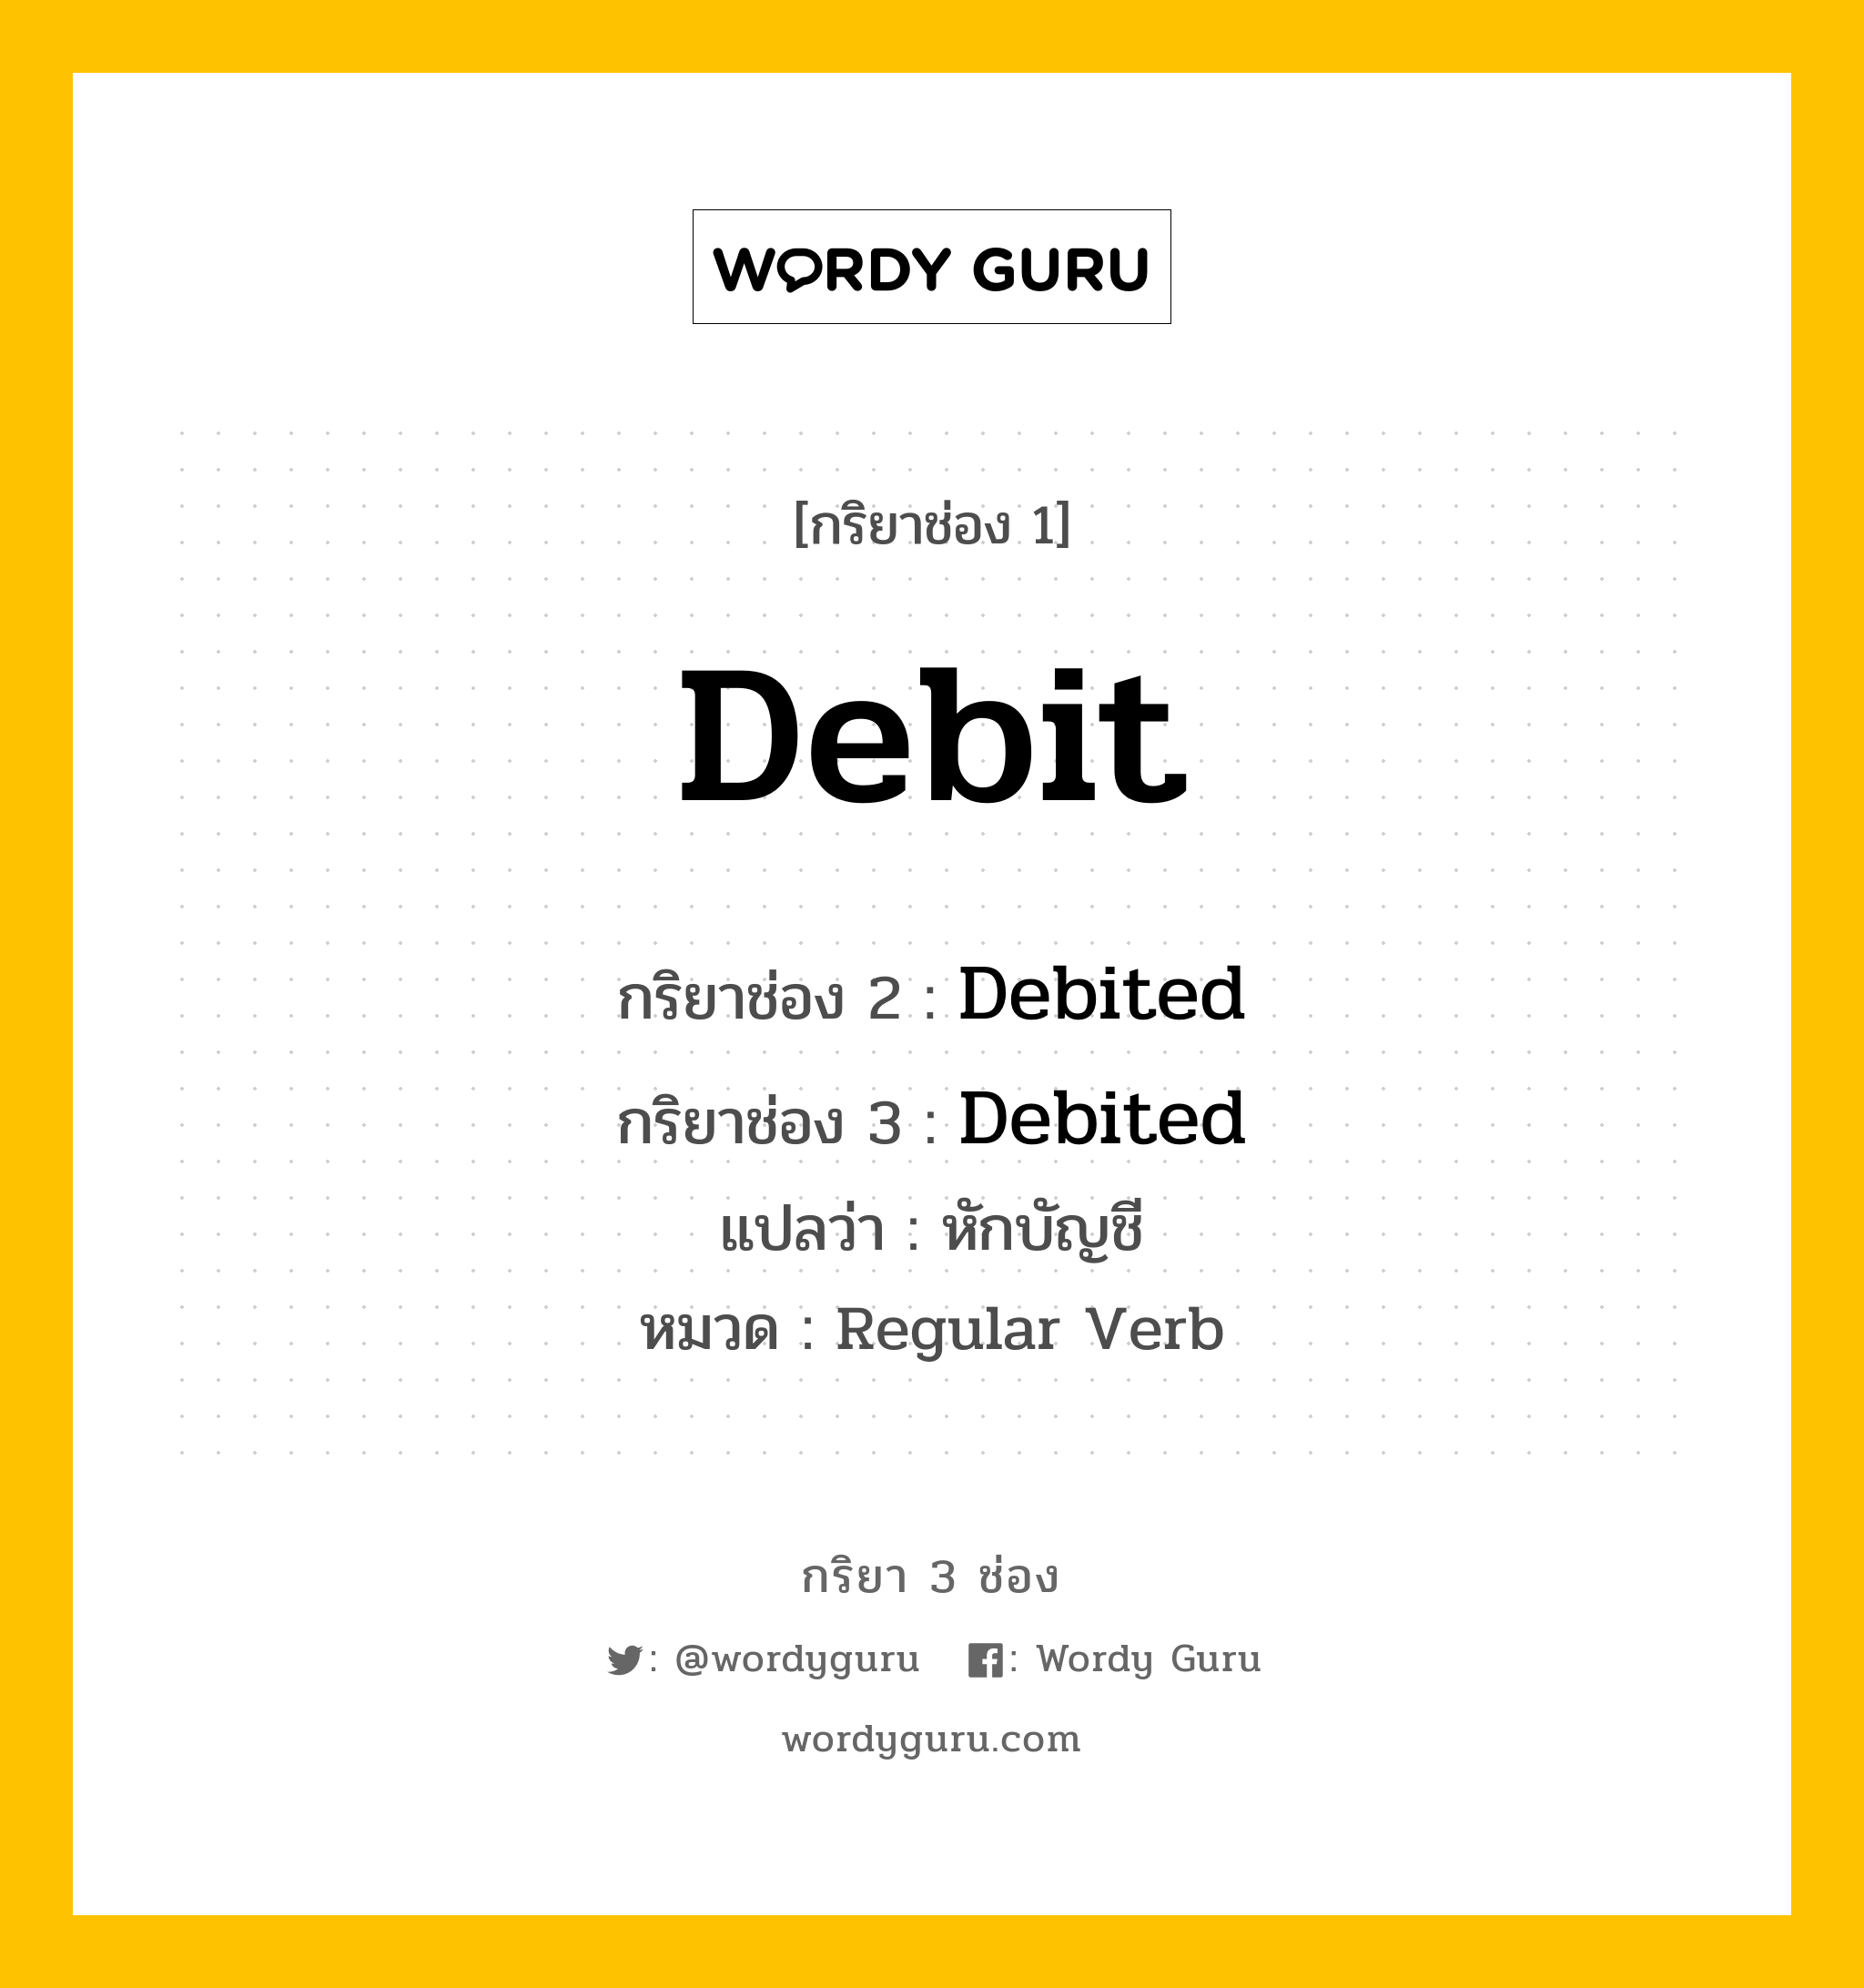 กริยา 3 ช่อง ของ Debit คืออะไร? มาดูคำอ่าน คำแปลกันเลย, กริยาช่อง 1 Debit กริยาช่อง 2 Debited กริยาช่อง 3 Debited แปลว่า หักบัญชี หมวด Regular Verb หมวด Regular Verb